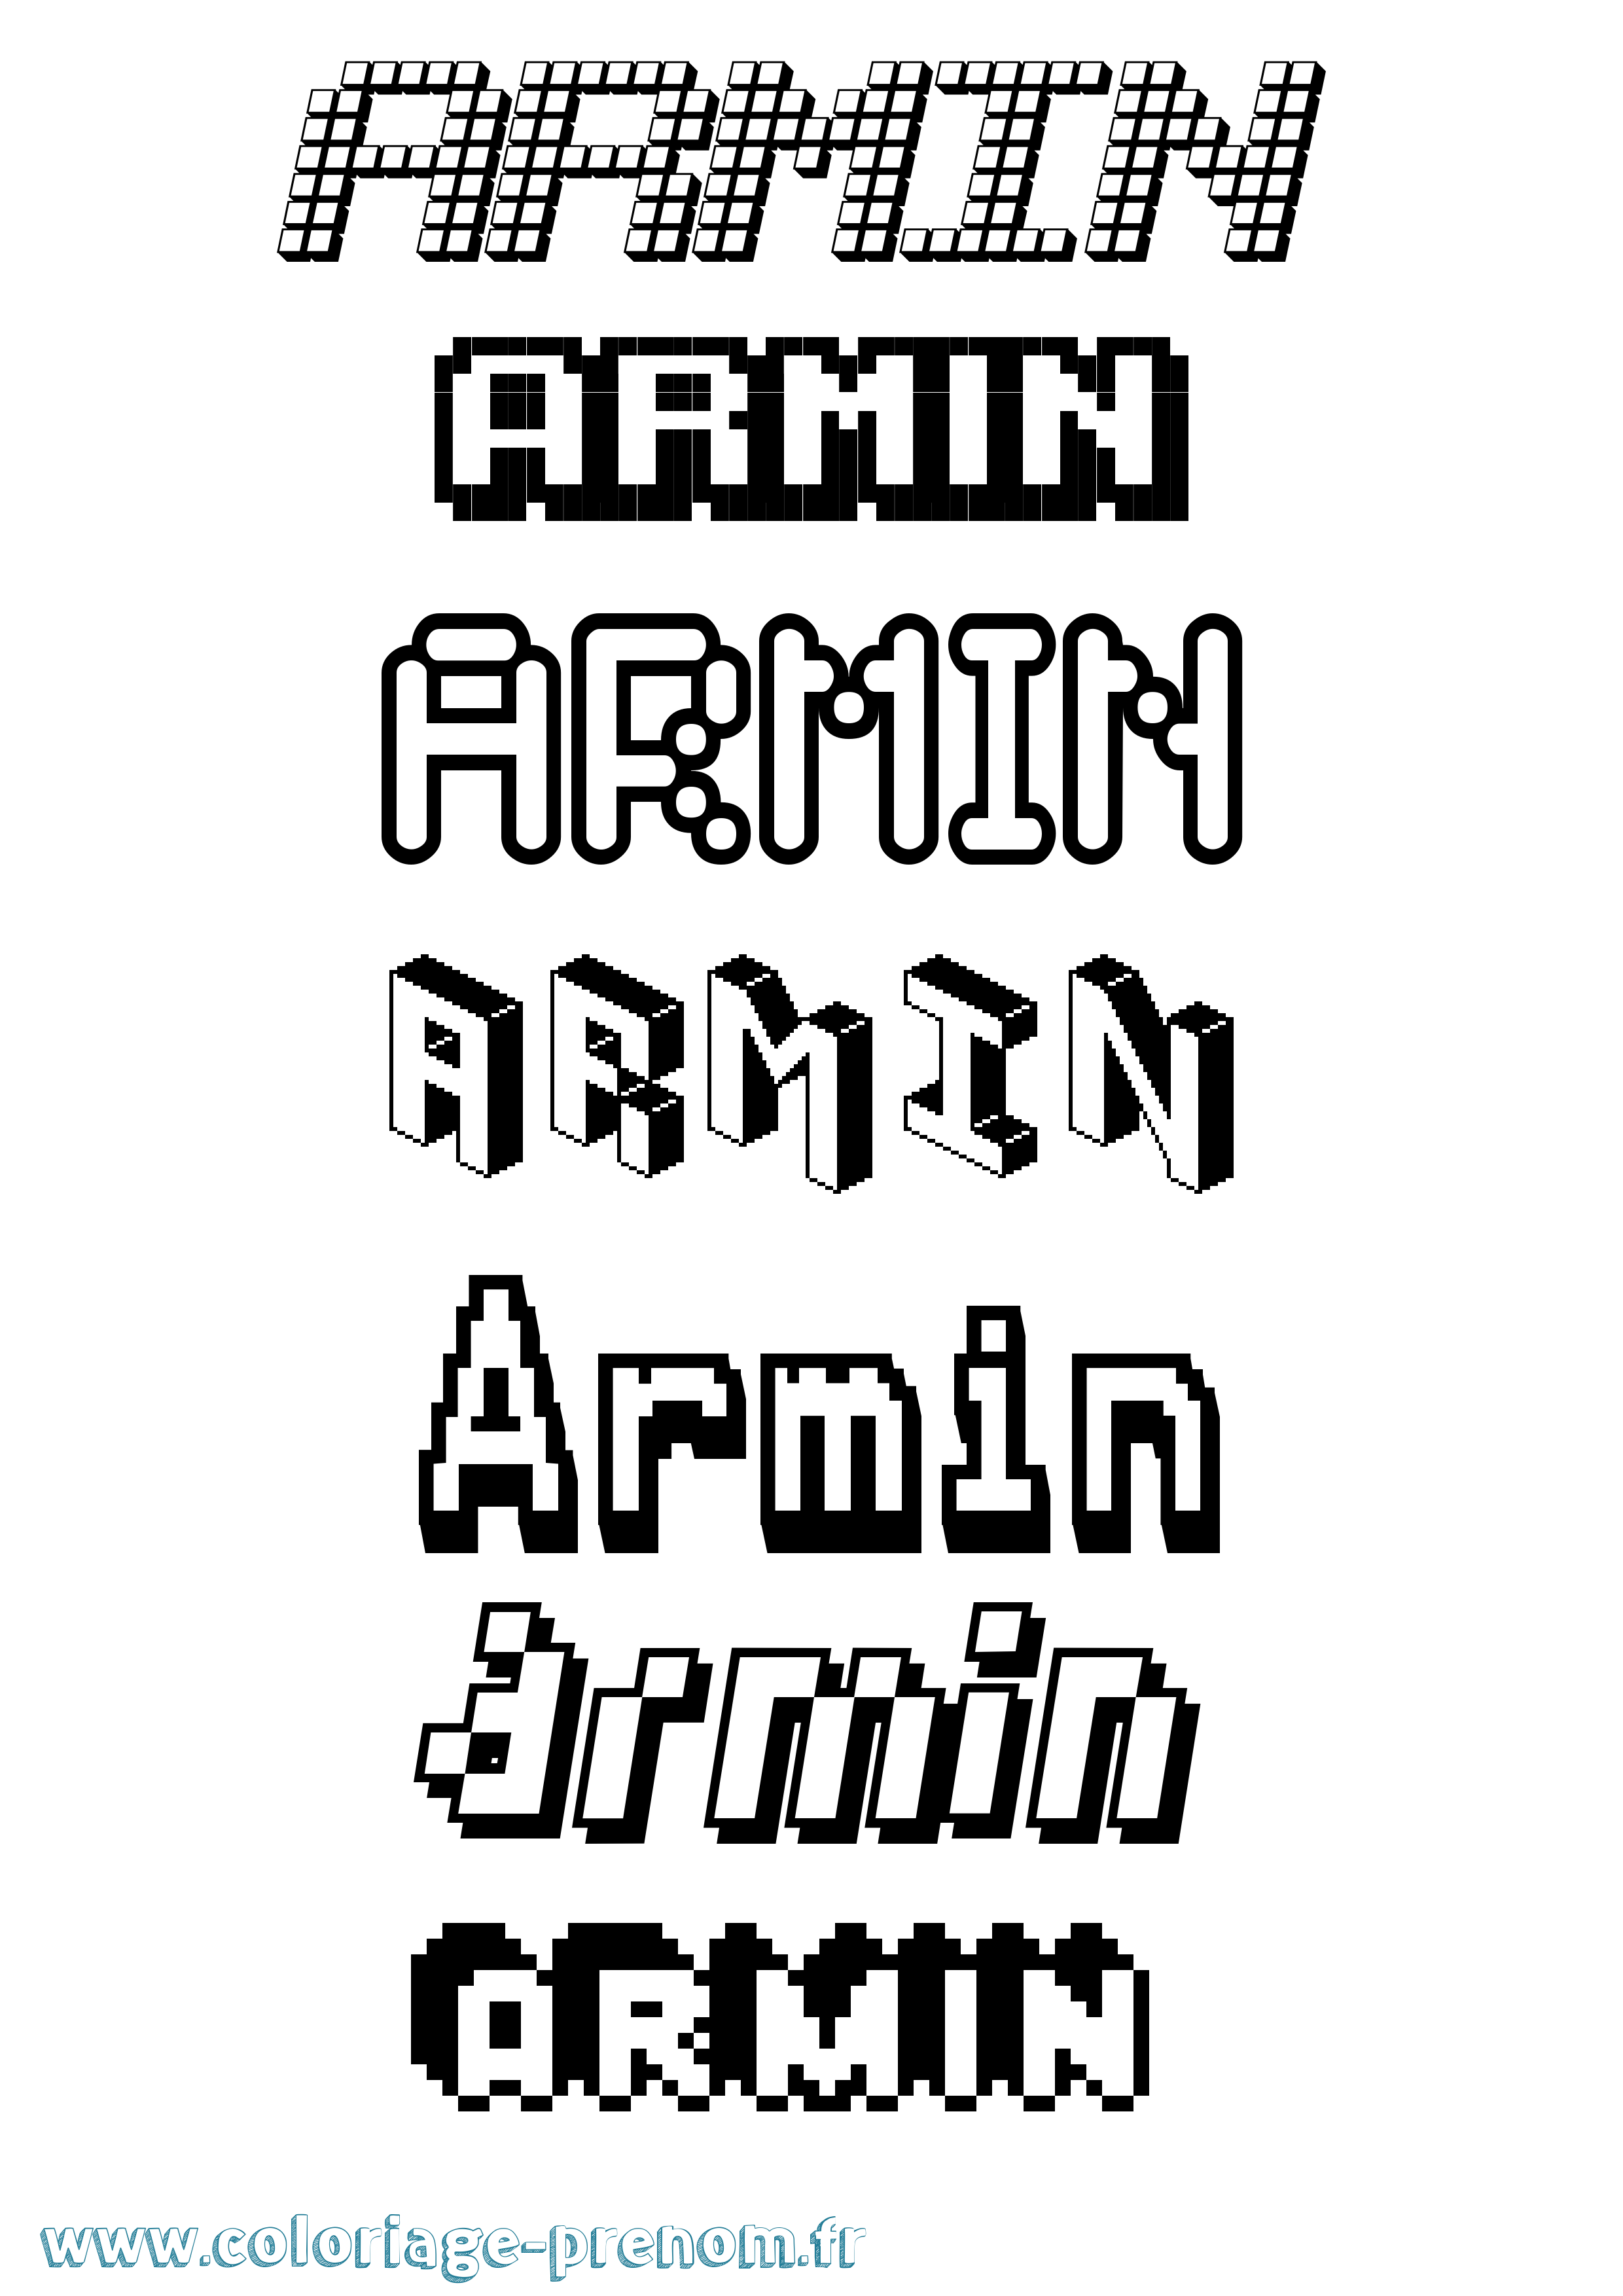 Coloriage prénom Armin Pixel